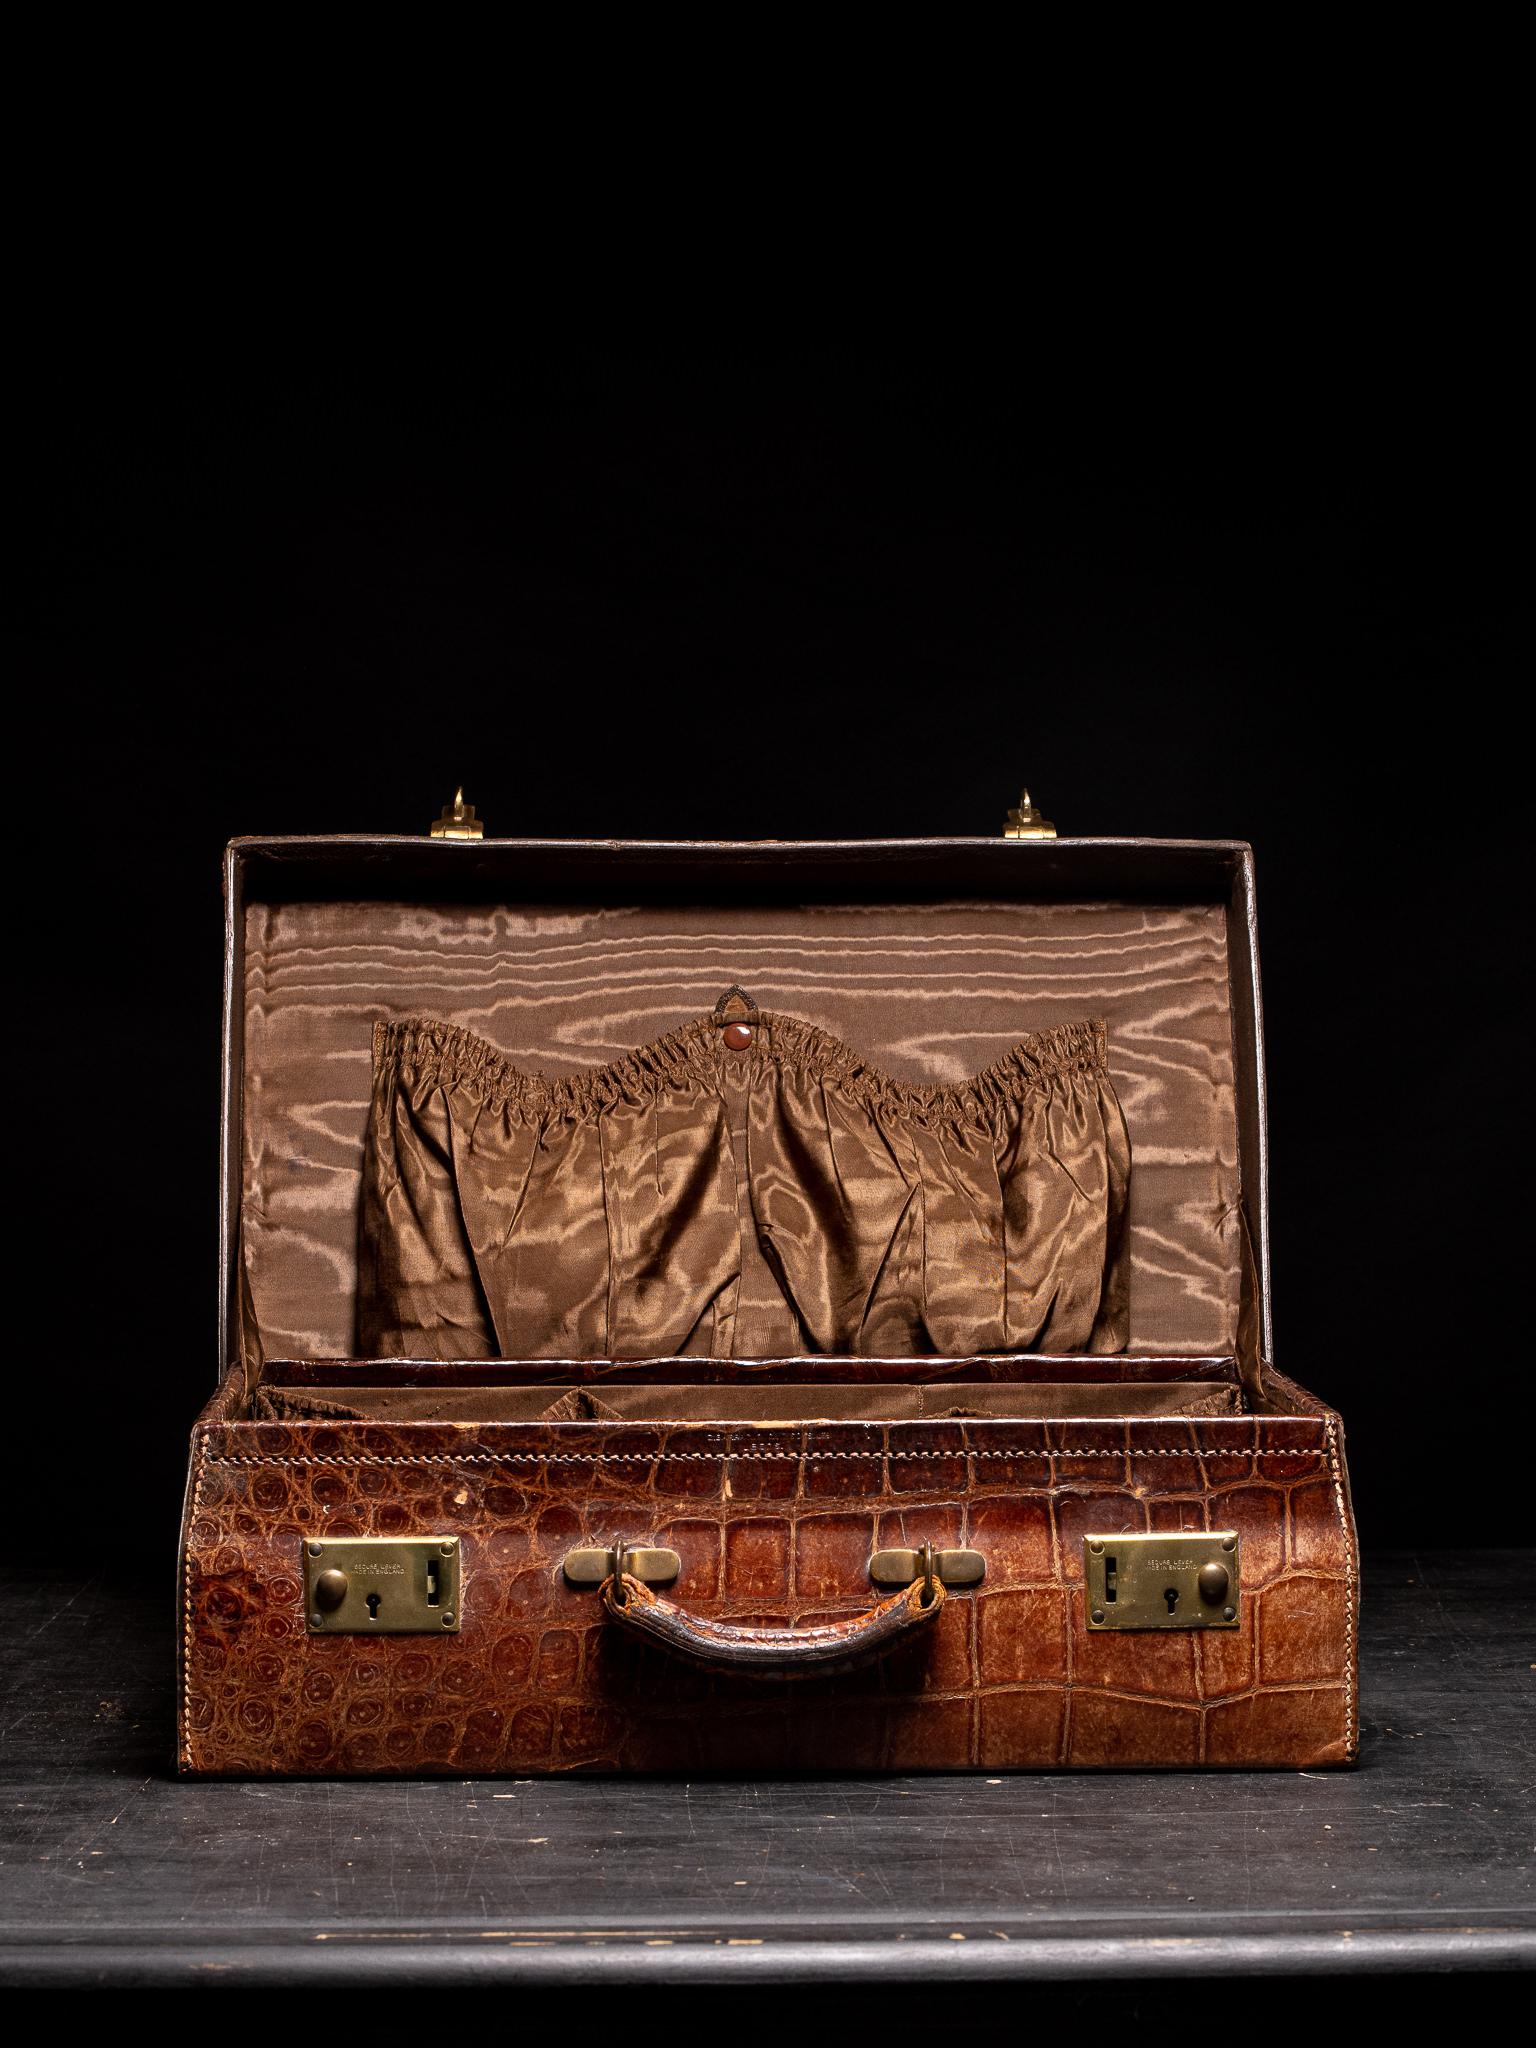 Antike Krokodil-Reisetasche aus dem frühen 20. Jahrhundert aus britischer Produktion, mit originalem Baumwollfutter und kleinem Dokumentenhalter im Inneren. Das Etui strahlt Stil und Eleganz aus und ist ein fantastischer Gesprächsstoff, ein sehr